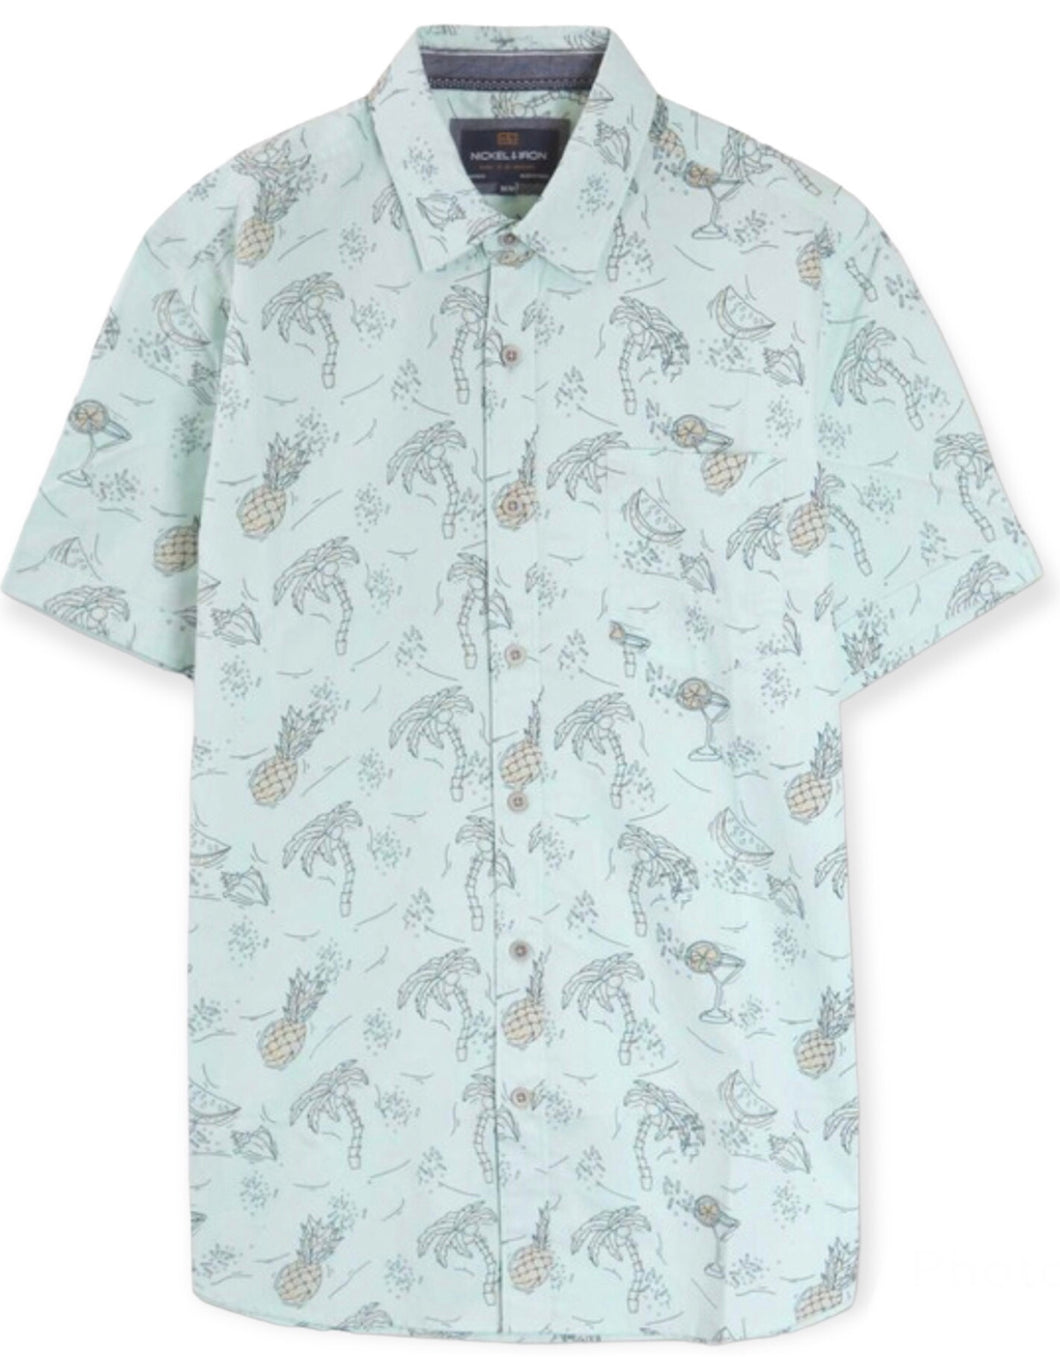 Brian's Tropical Print Woven Shirt